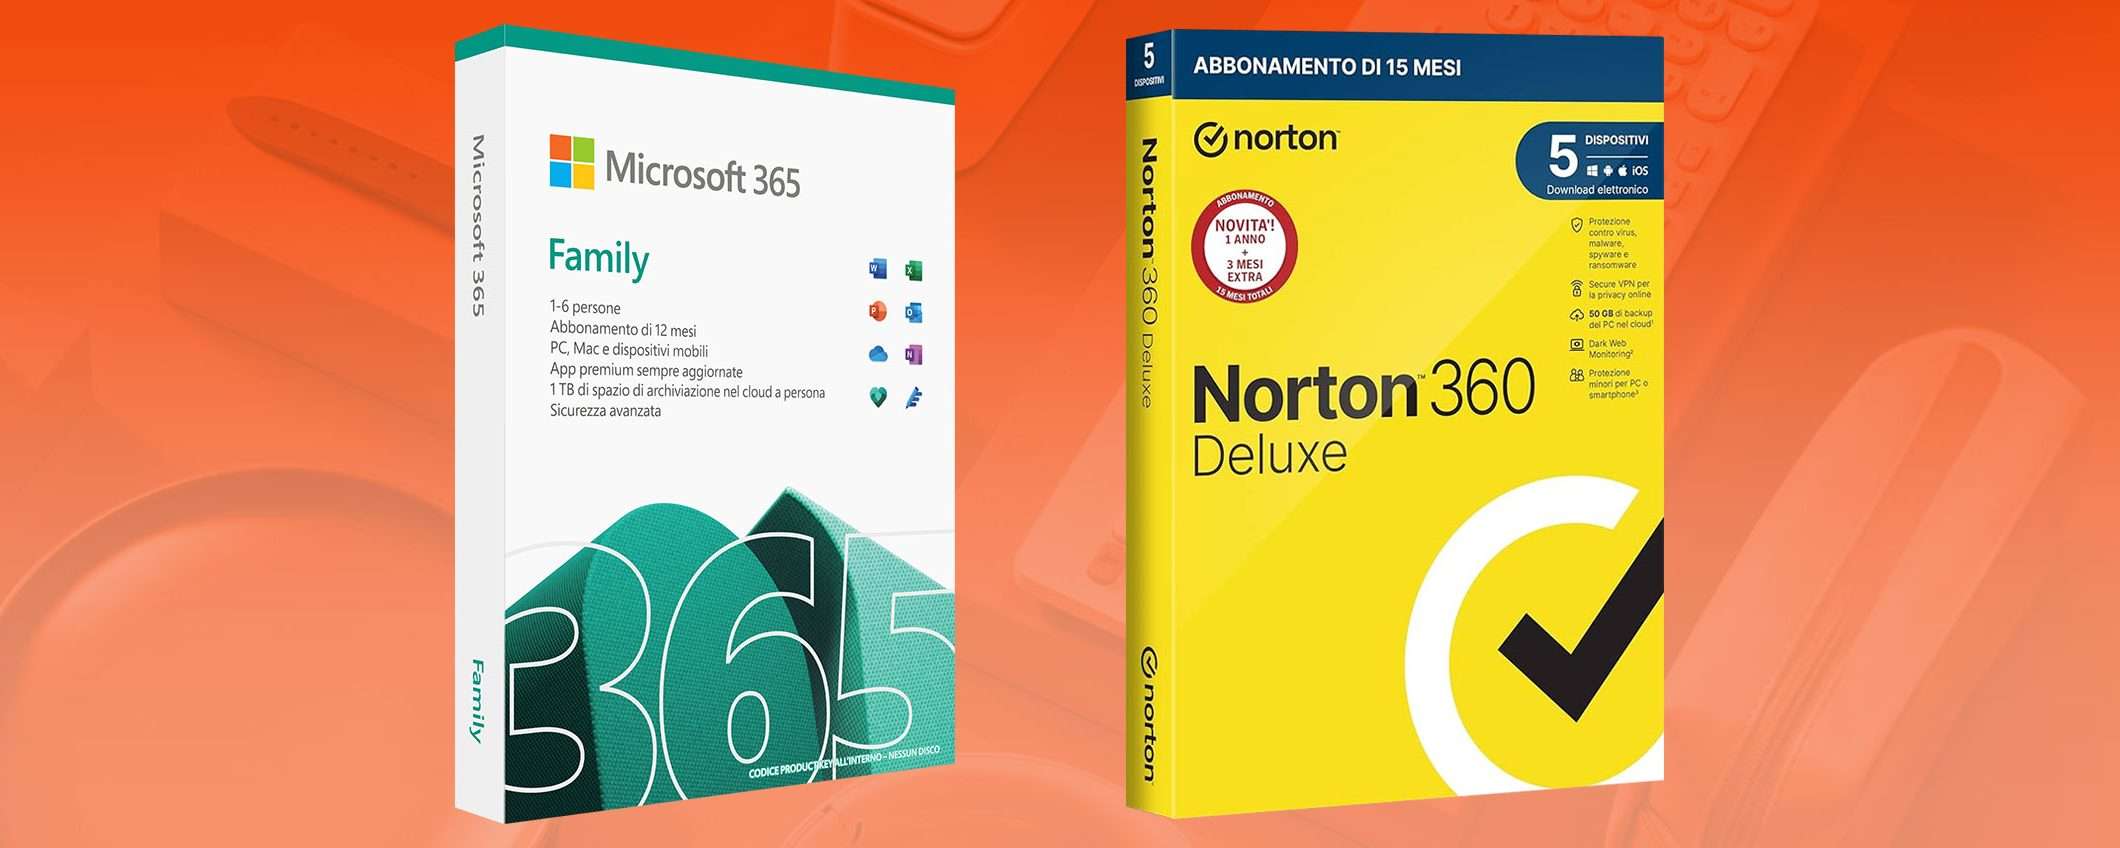 Microsoft 365 Family: SUPER SCONTO e Norton in regalo